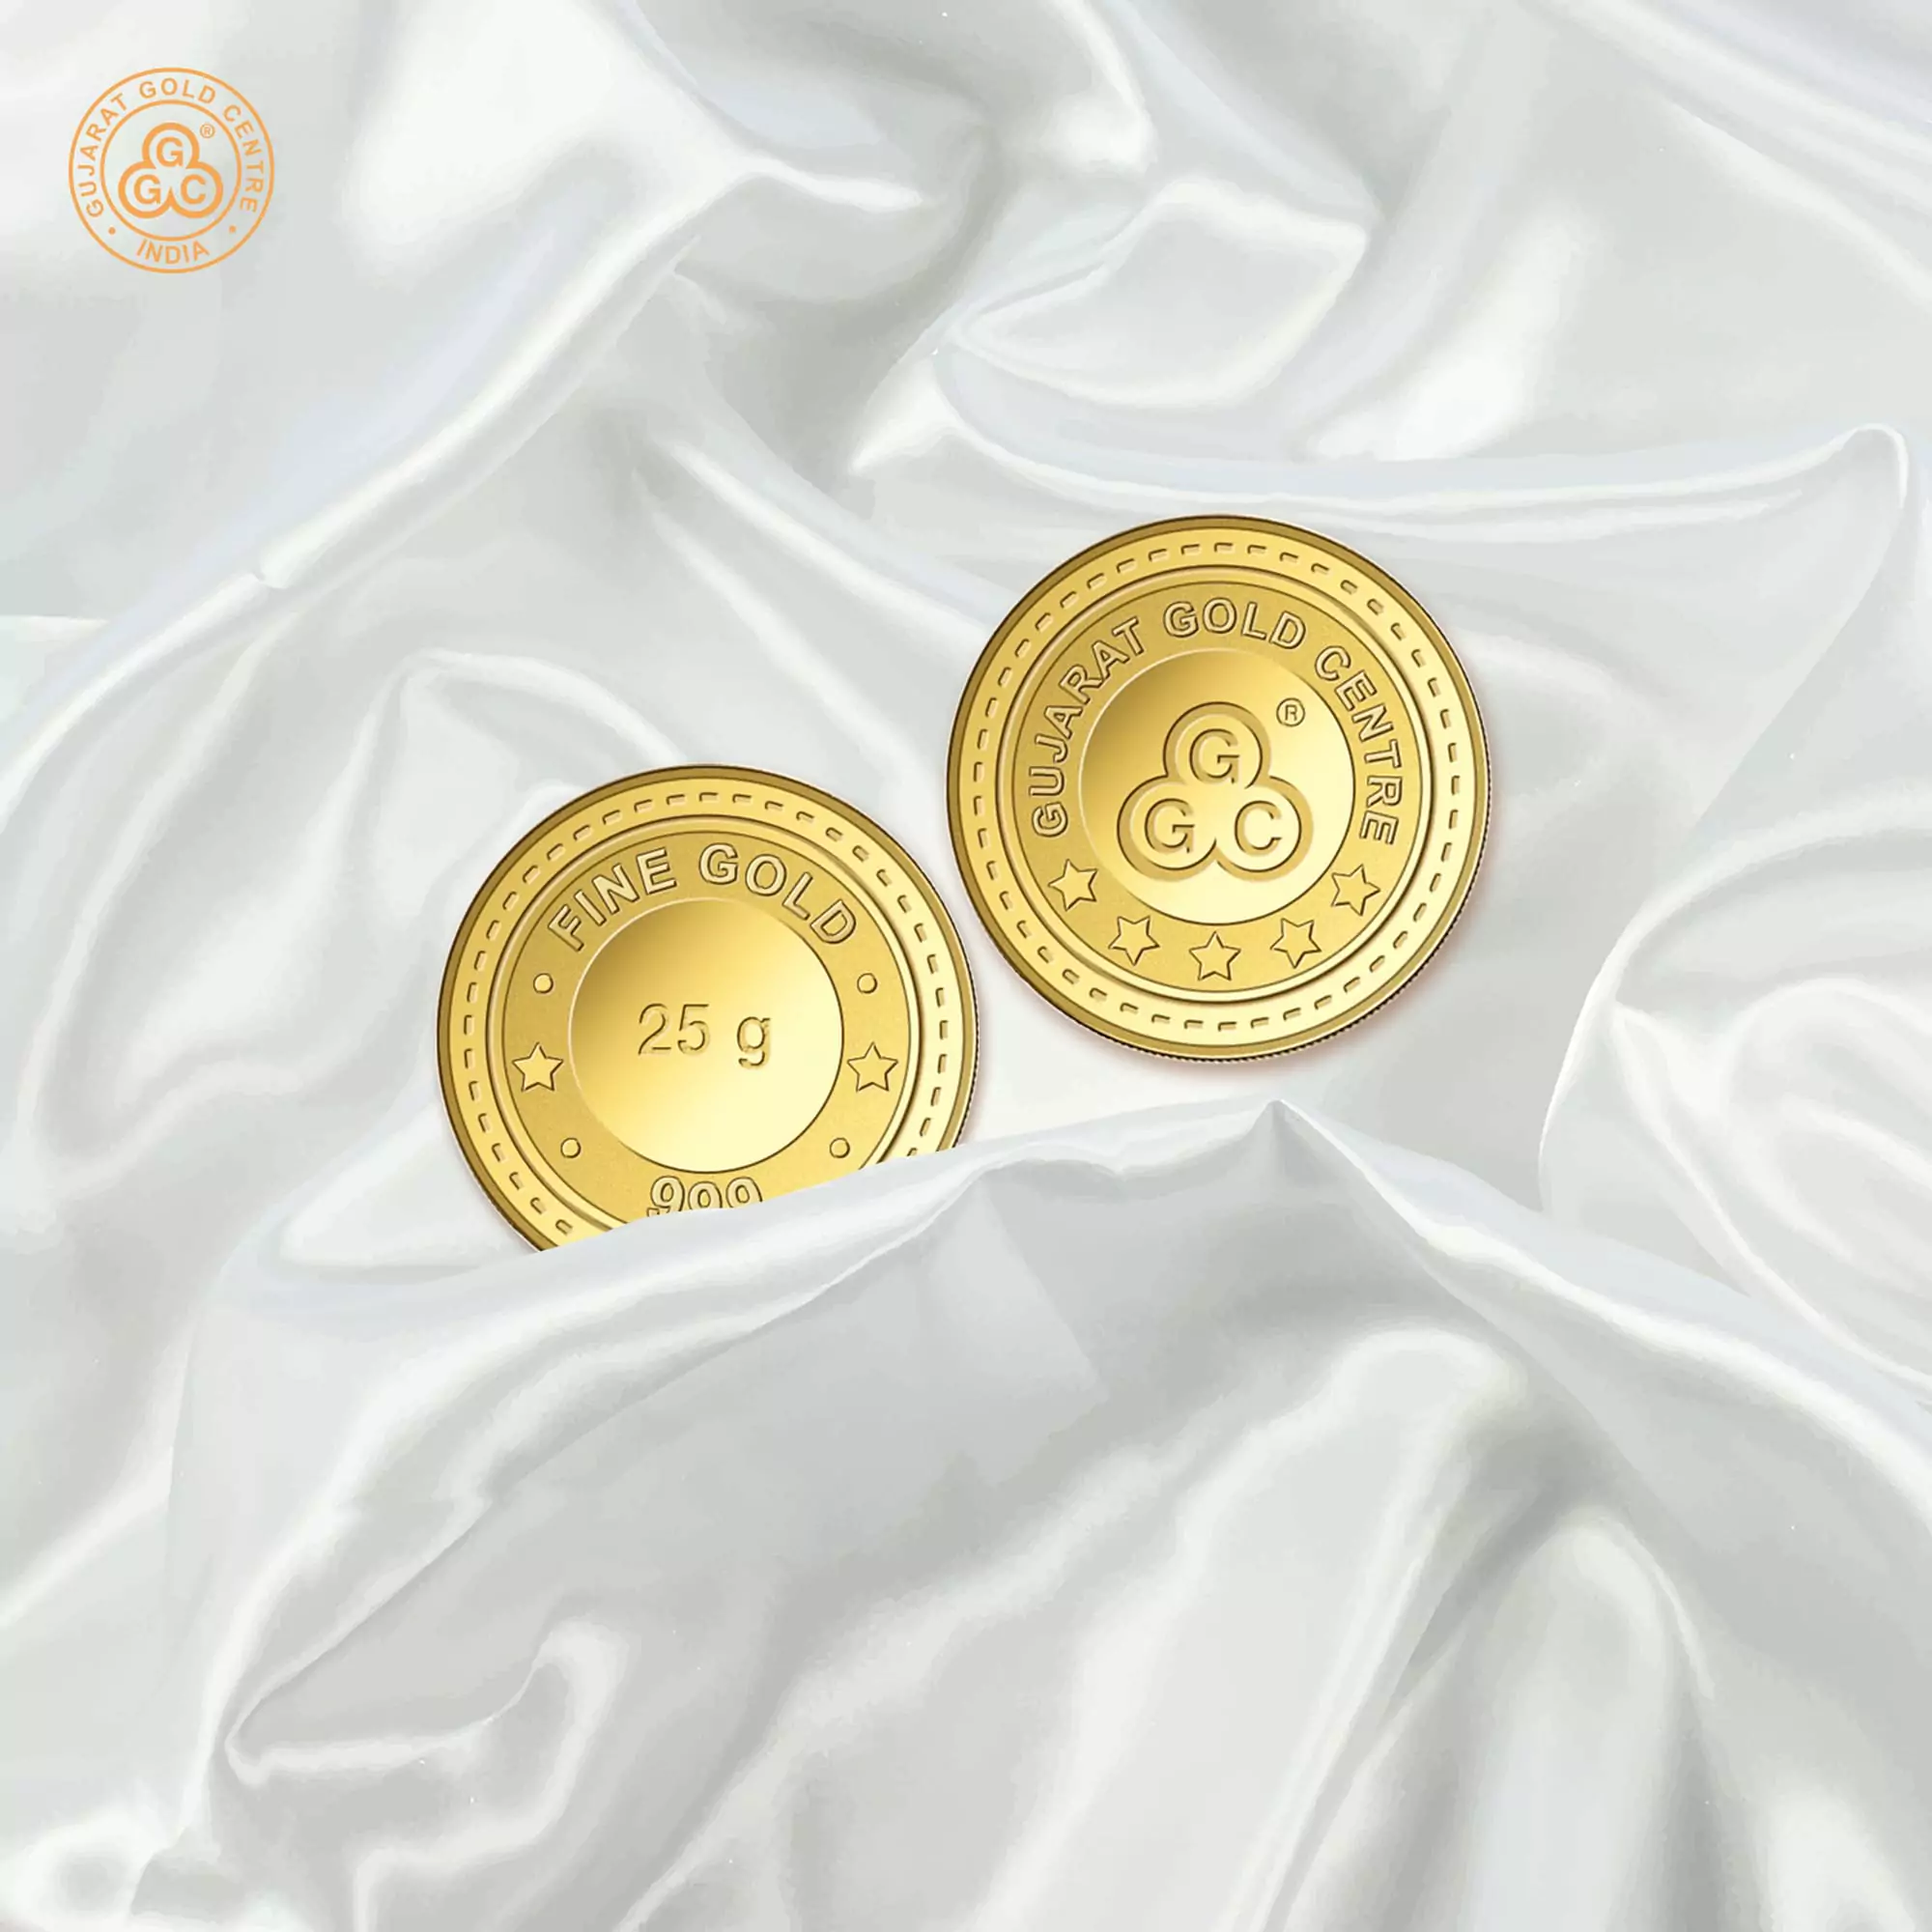 25gm GGC 24K Gold Coin